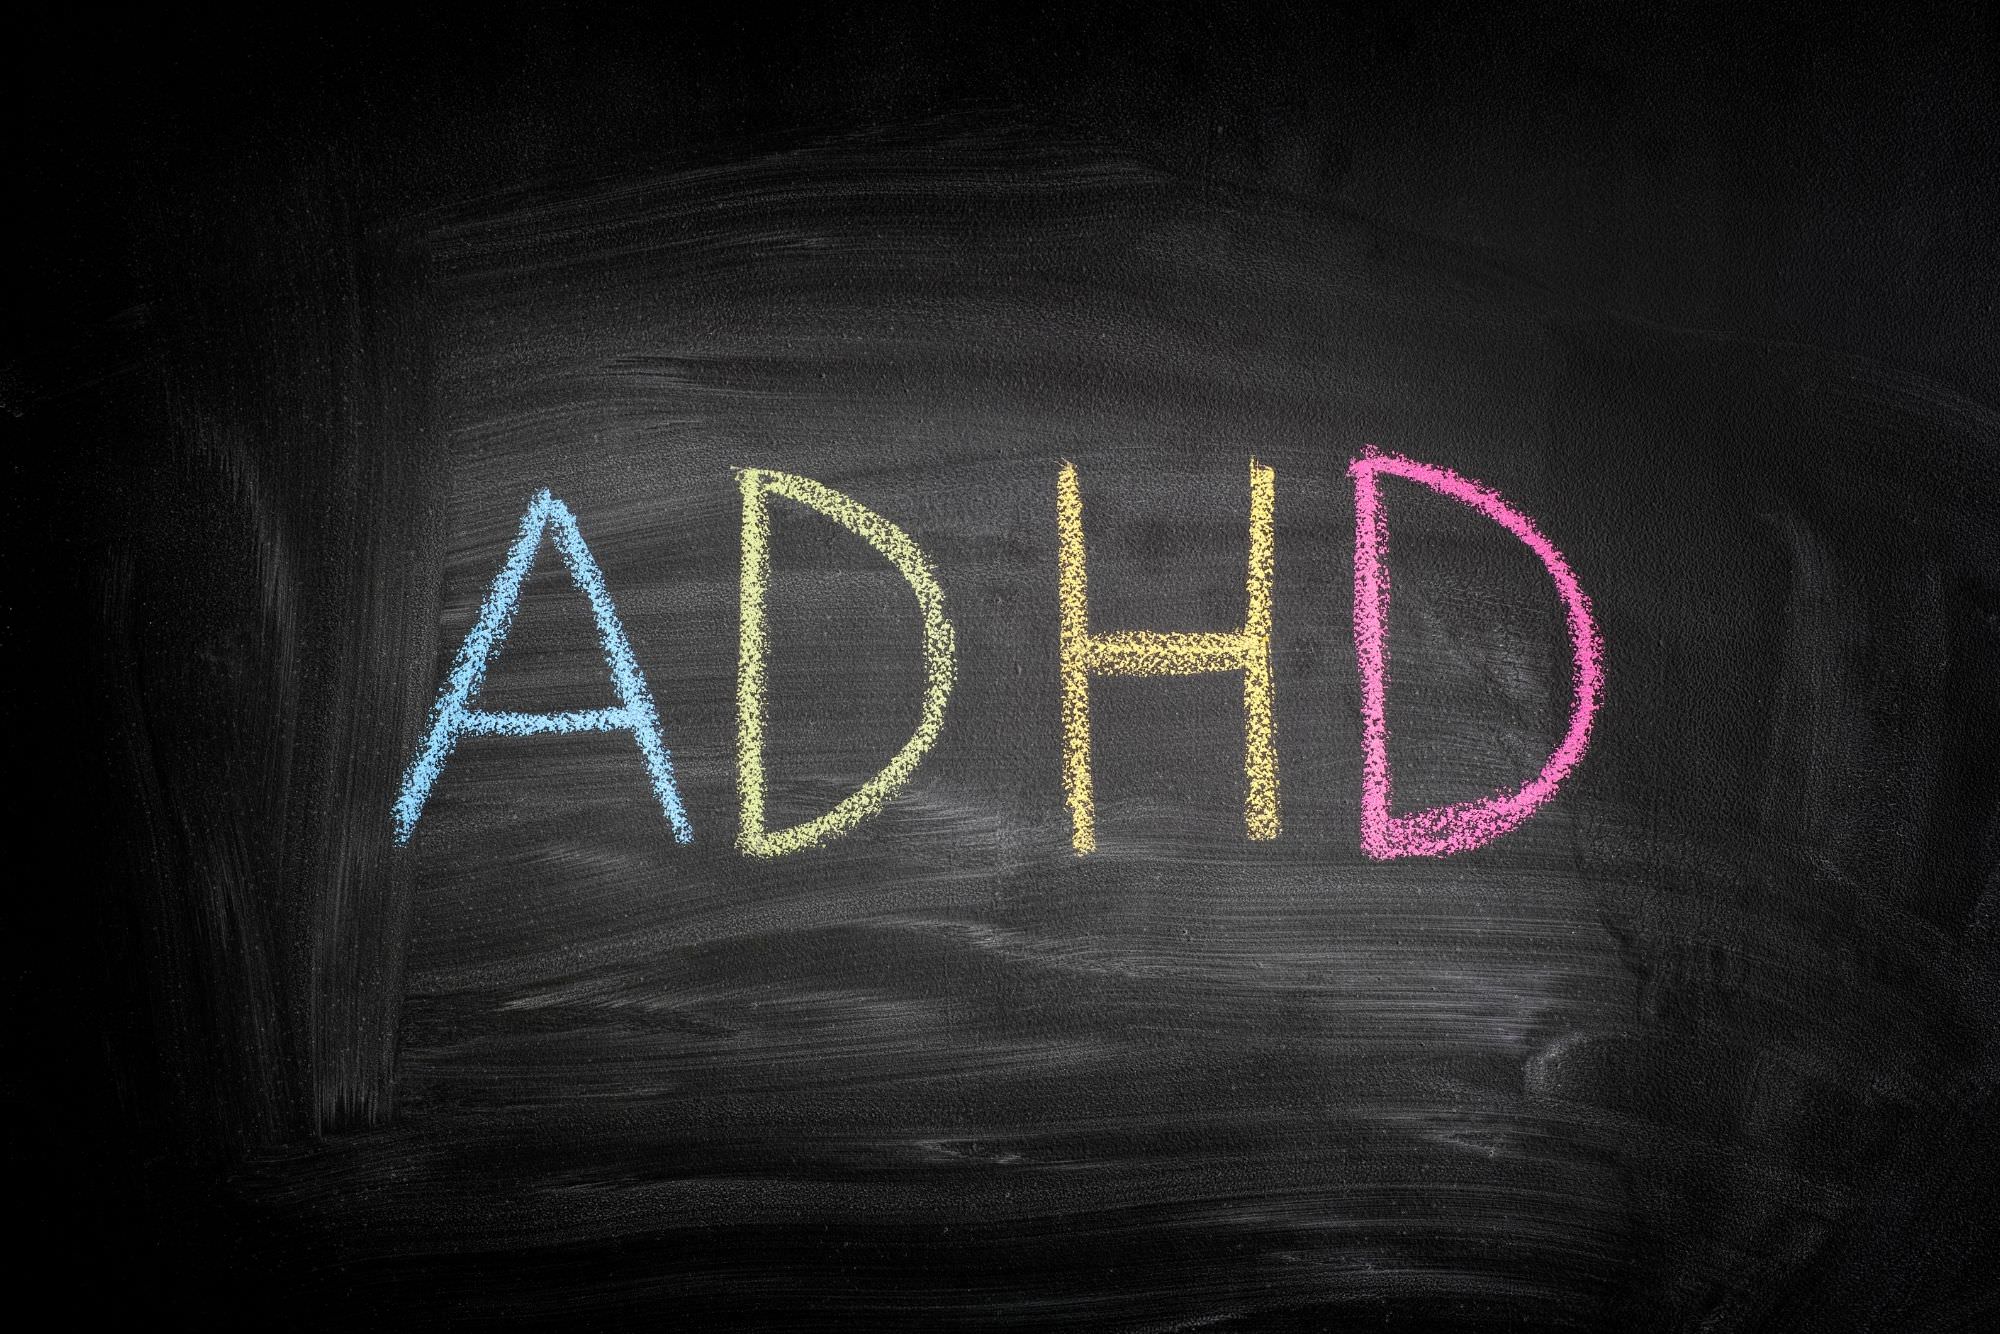 Avsnitt 34: Hur är det att ha dyslexi och ADHD?